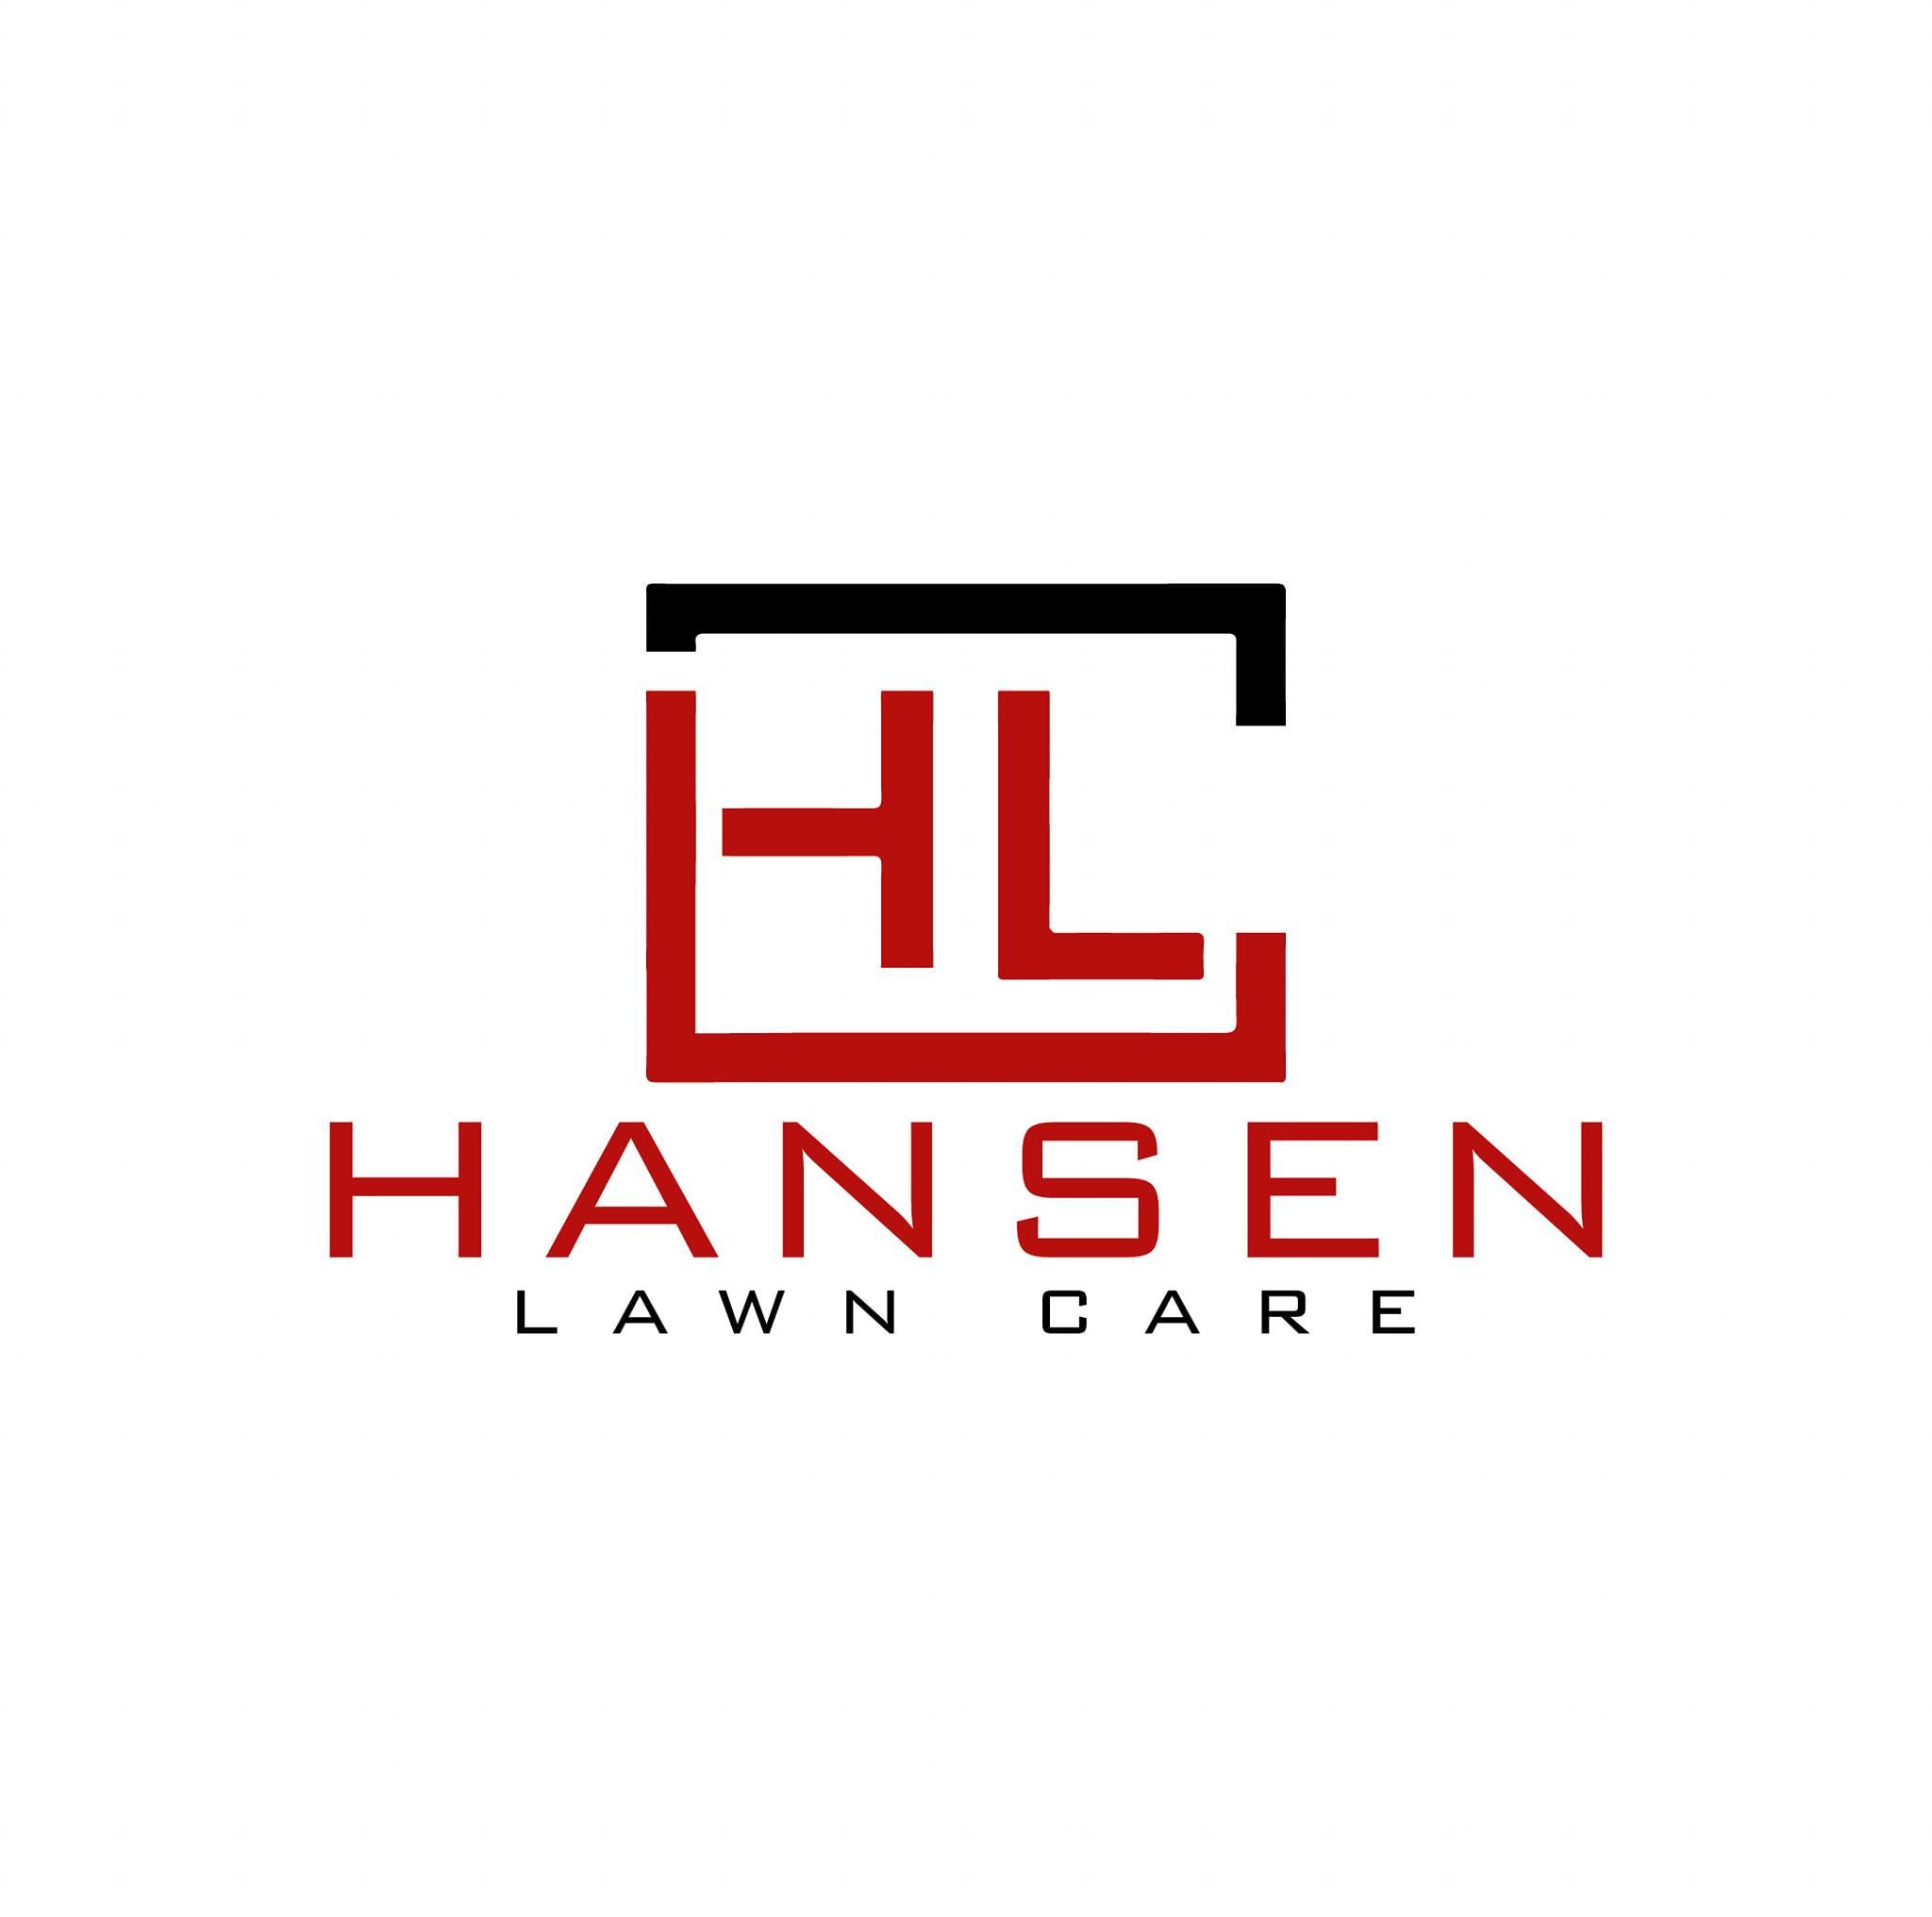 Hansen lawn logo